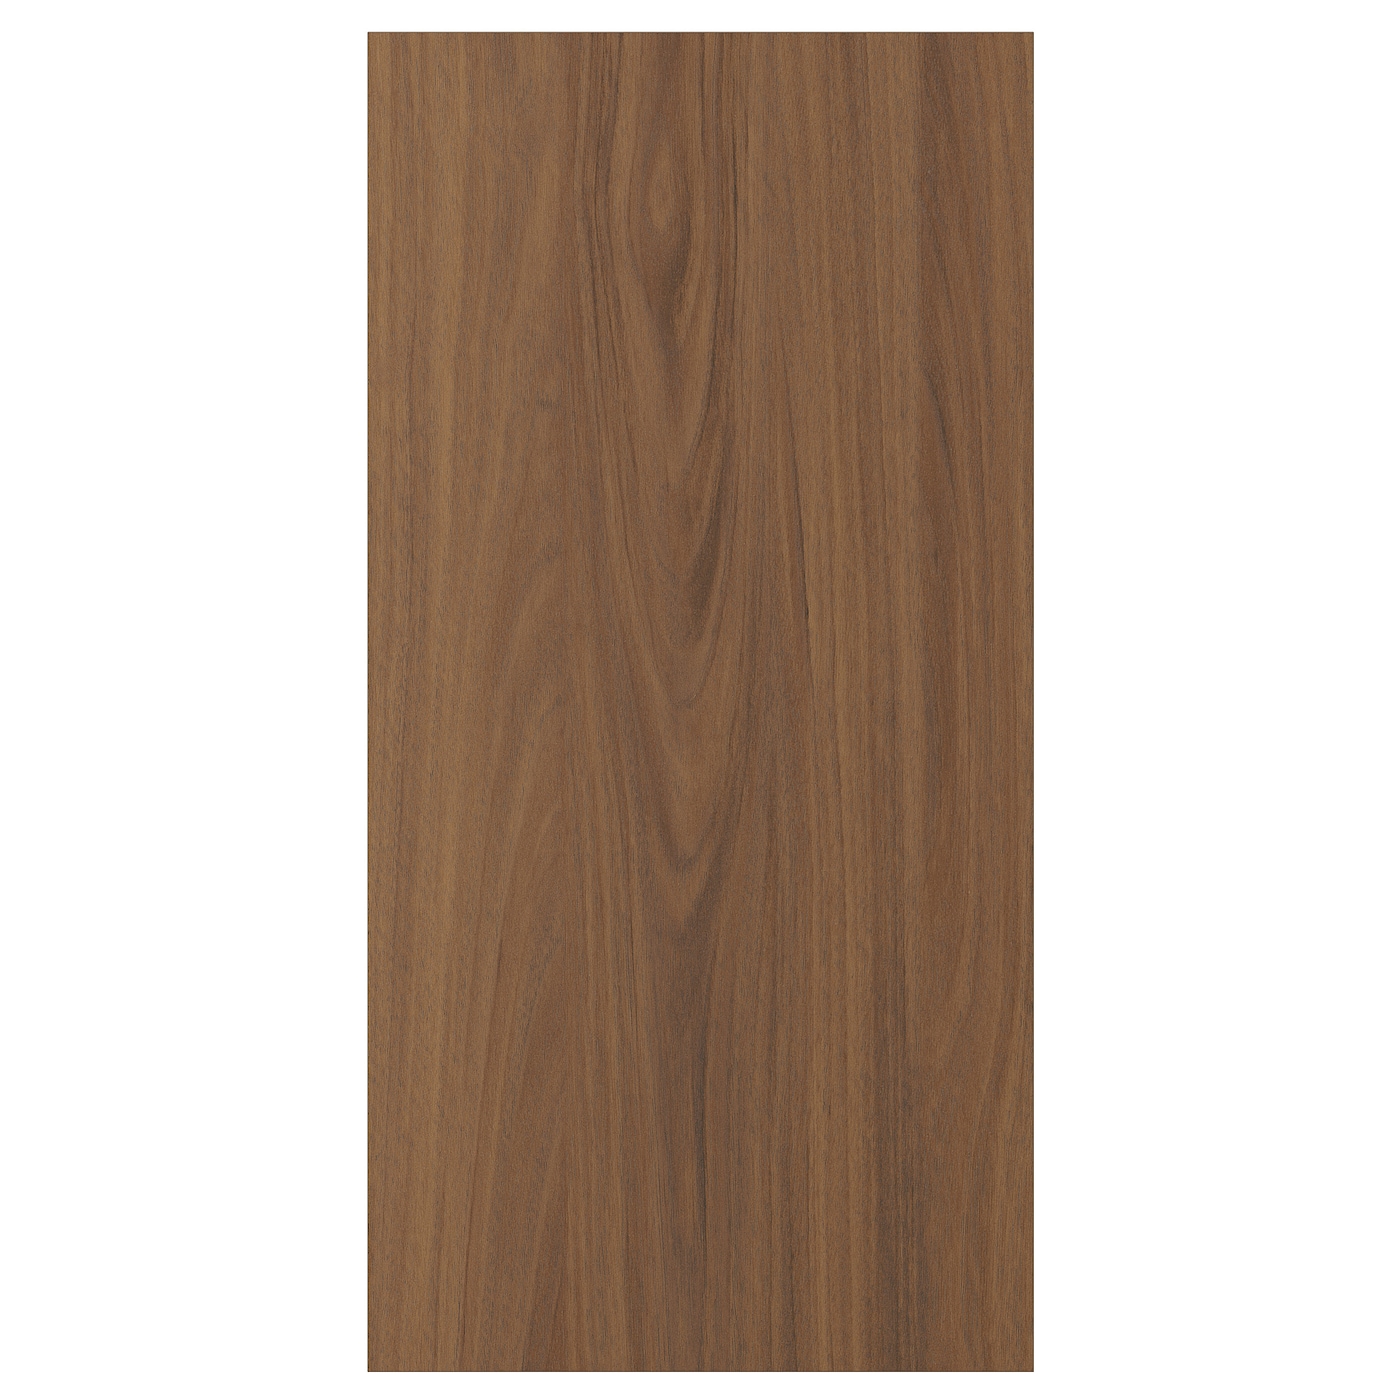 Дверца  - TISTORP IKEA/ ТИСТОРП ИКЕА,  60х30 см, коричневый